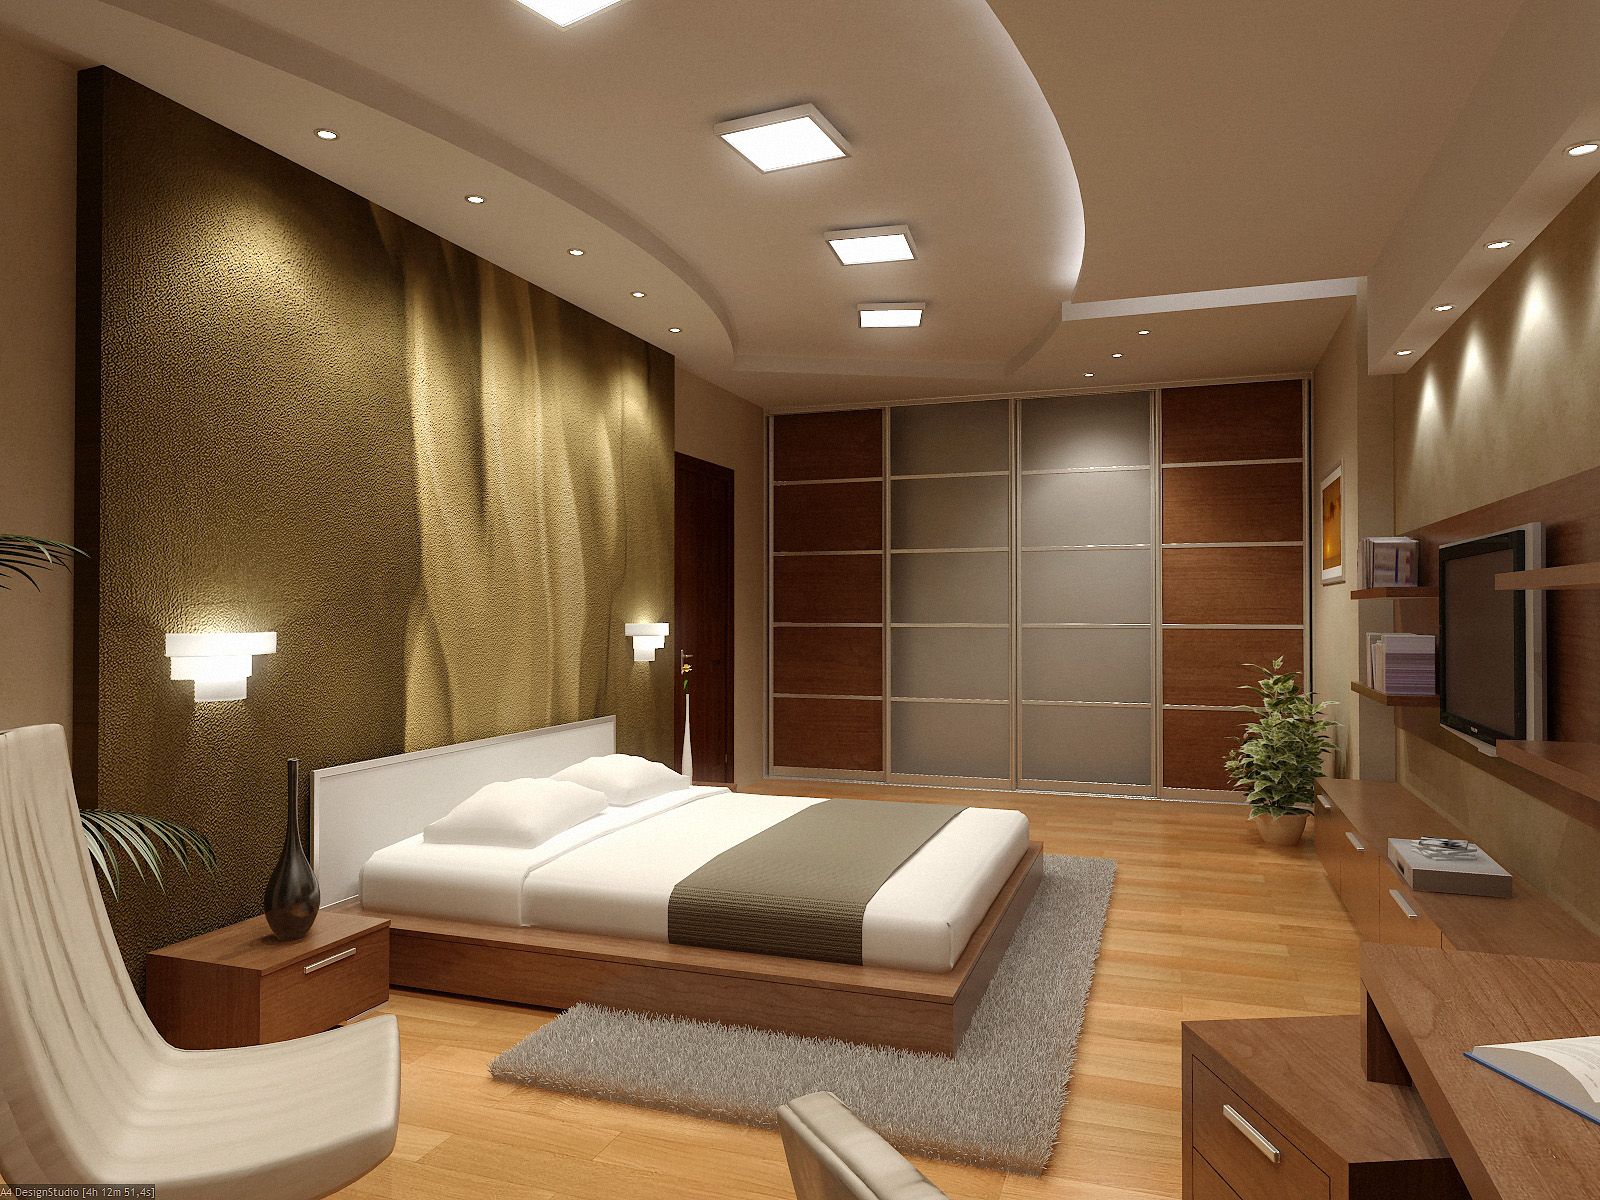 Interior Design Apartment Layout